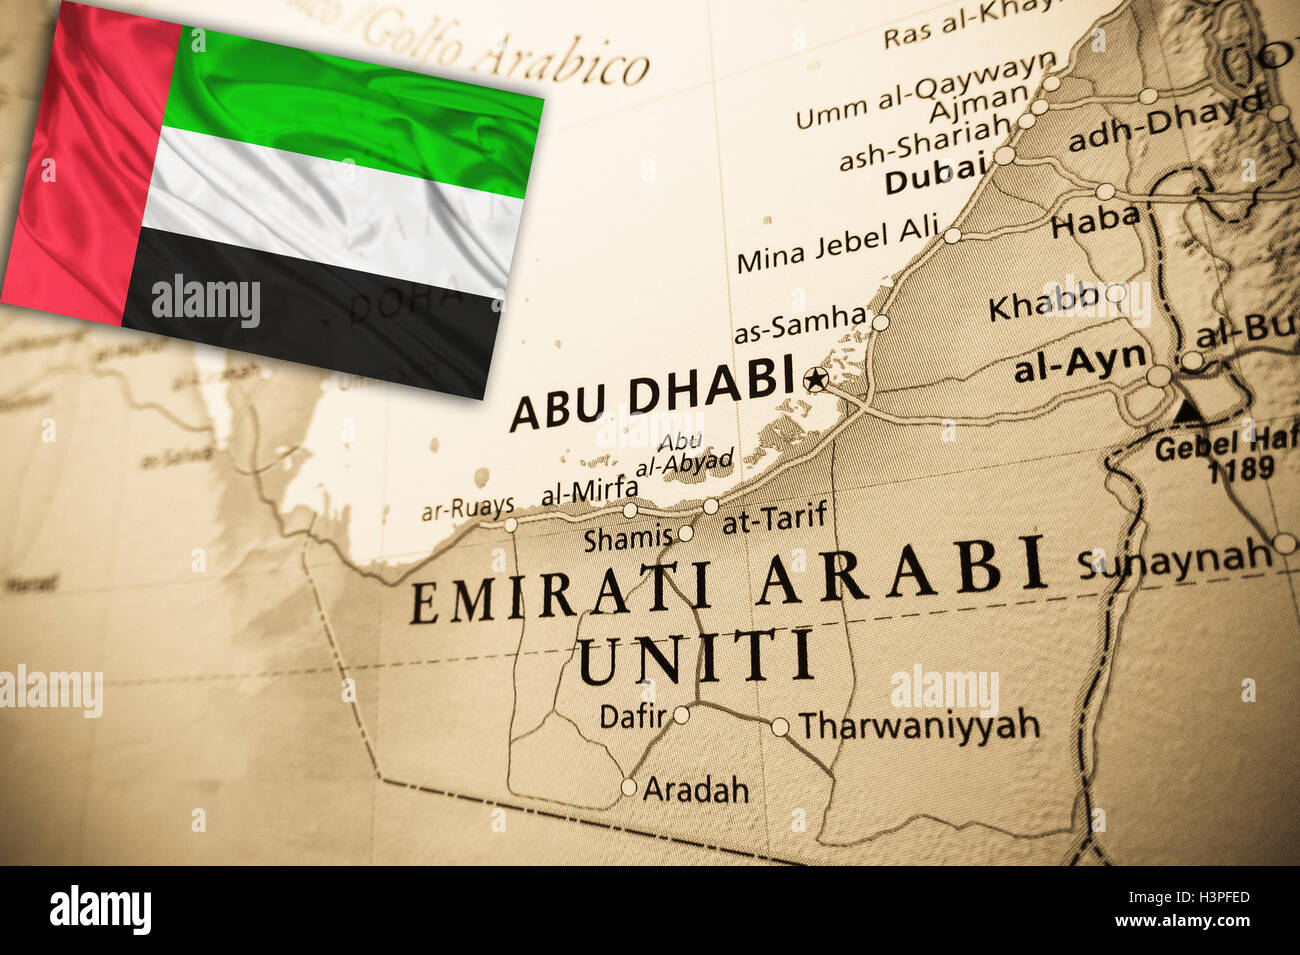 Объединенные арабские на английском. Флаг ОАЭ. Флаг арабских Эмиратов. ОАЭ на карте с флагом. Флаг Дубая.